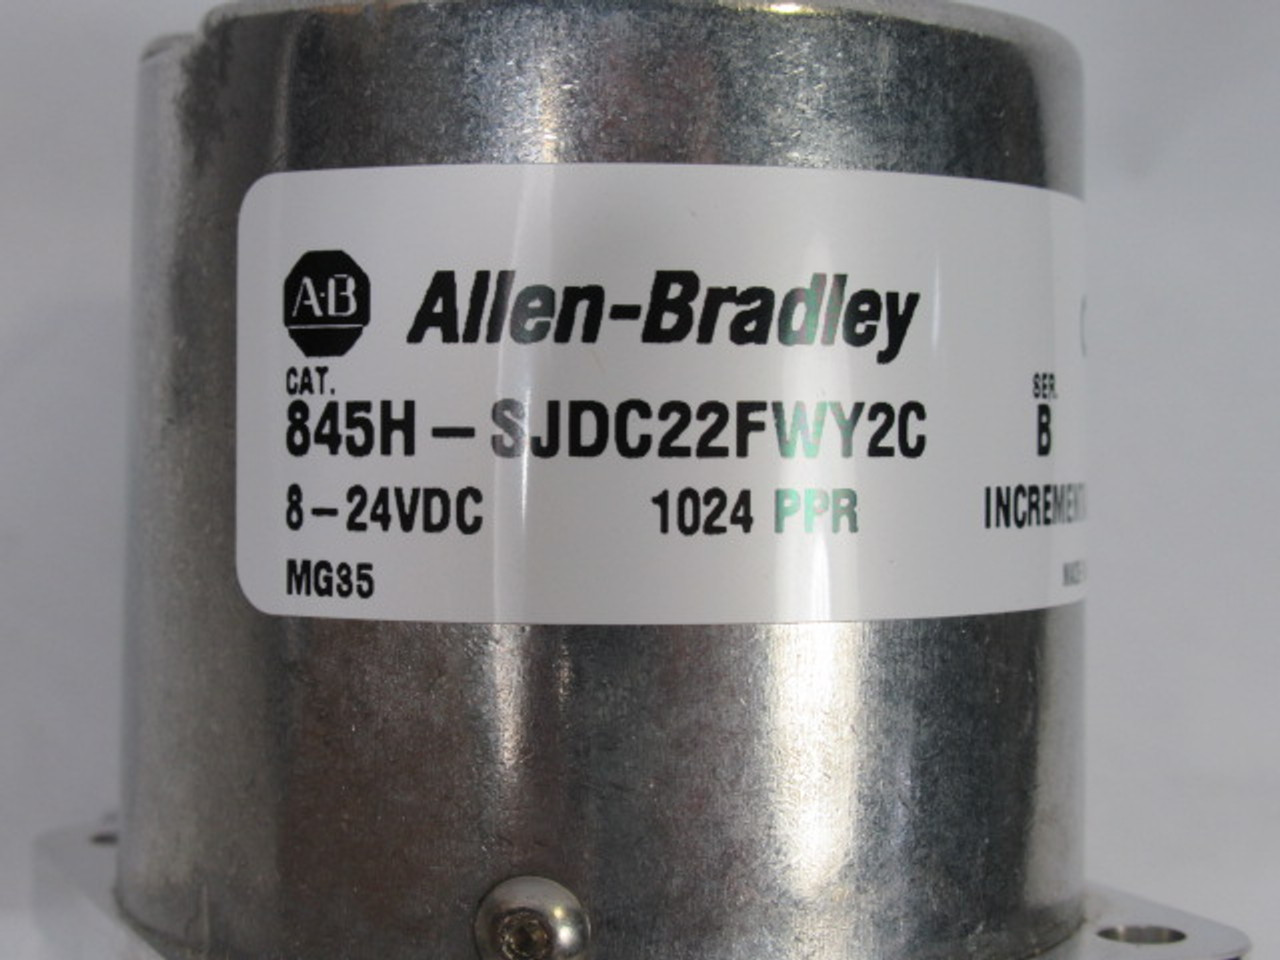 Allen-Bradley 845H-SJDC22FWY2C Optical Incremental Encoder 8-24VAC ! NEW !